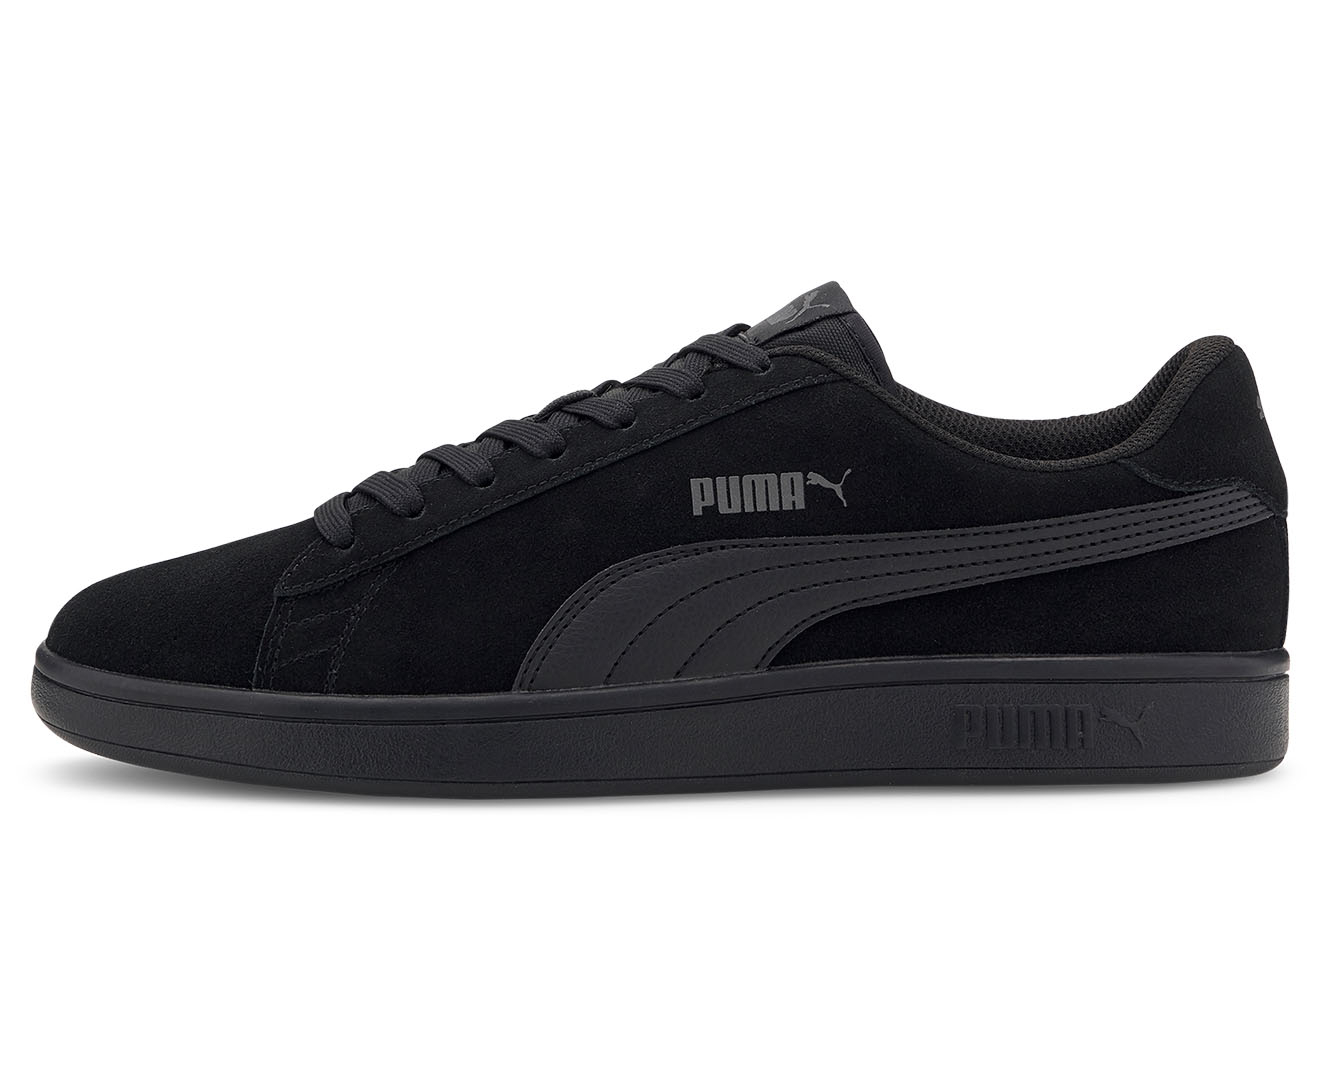 Puma Men's Smash V2 Sneaker - Puma Black/Dark Shadow | Catch.com.au